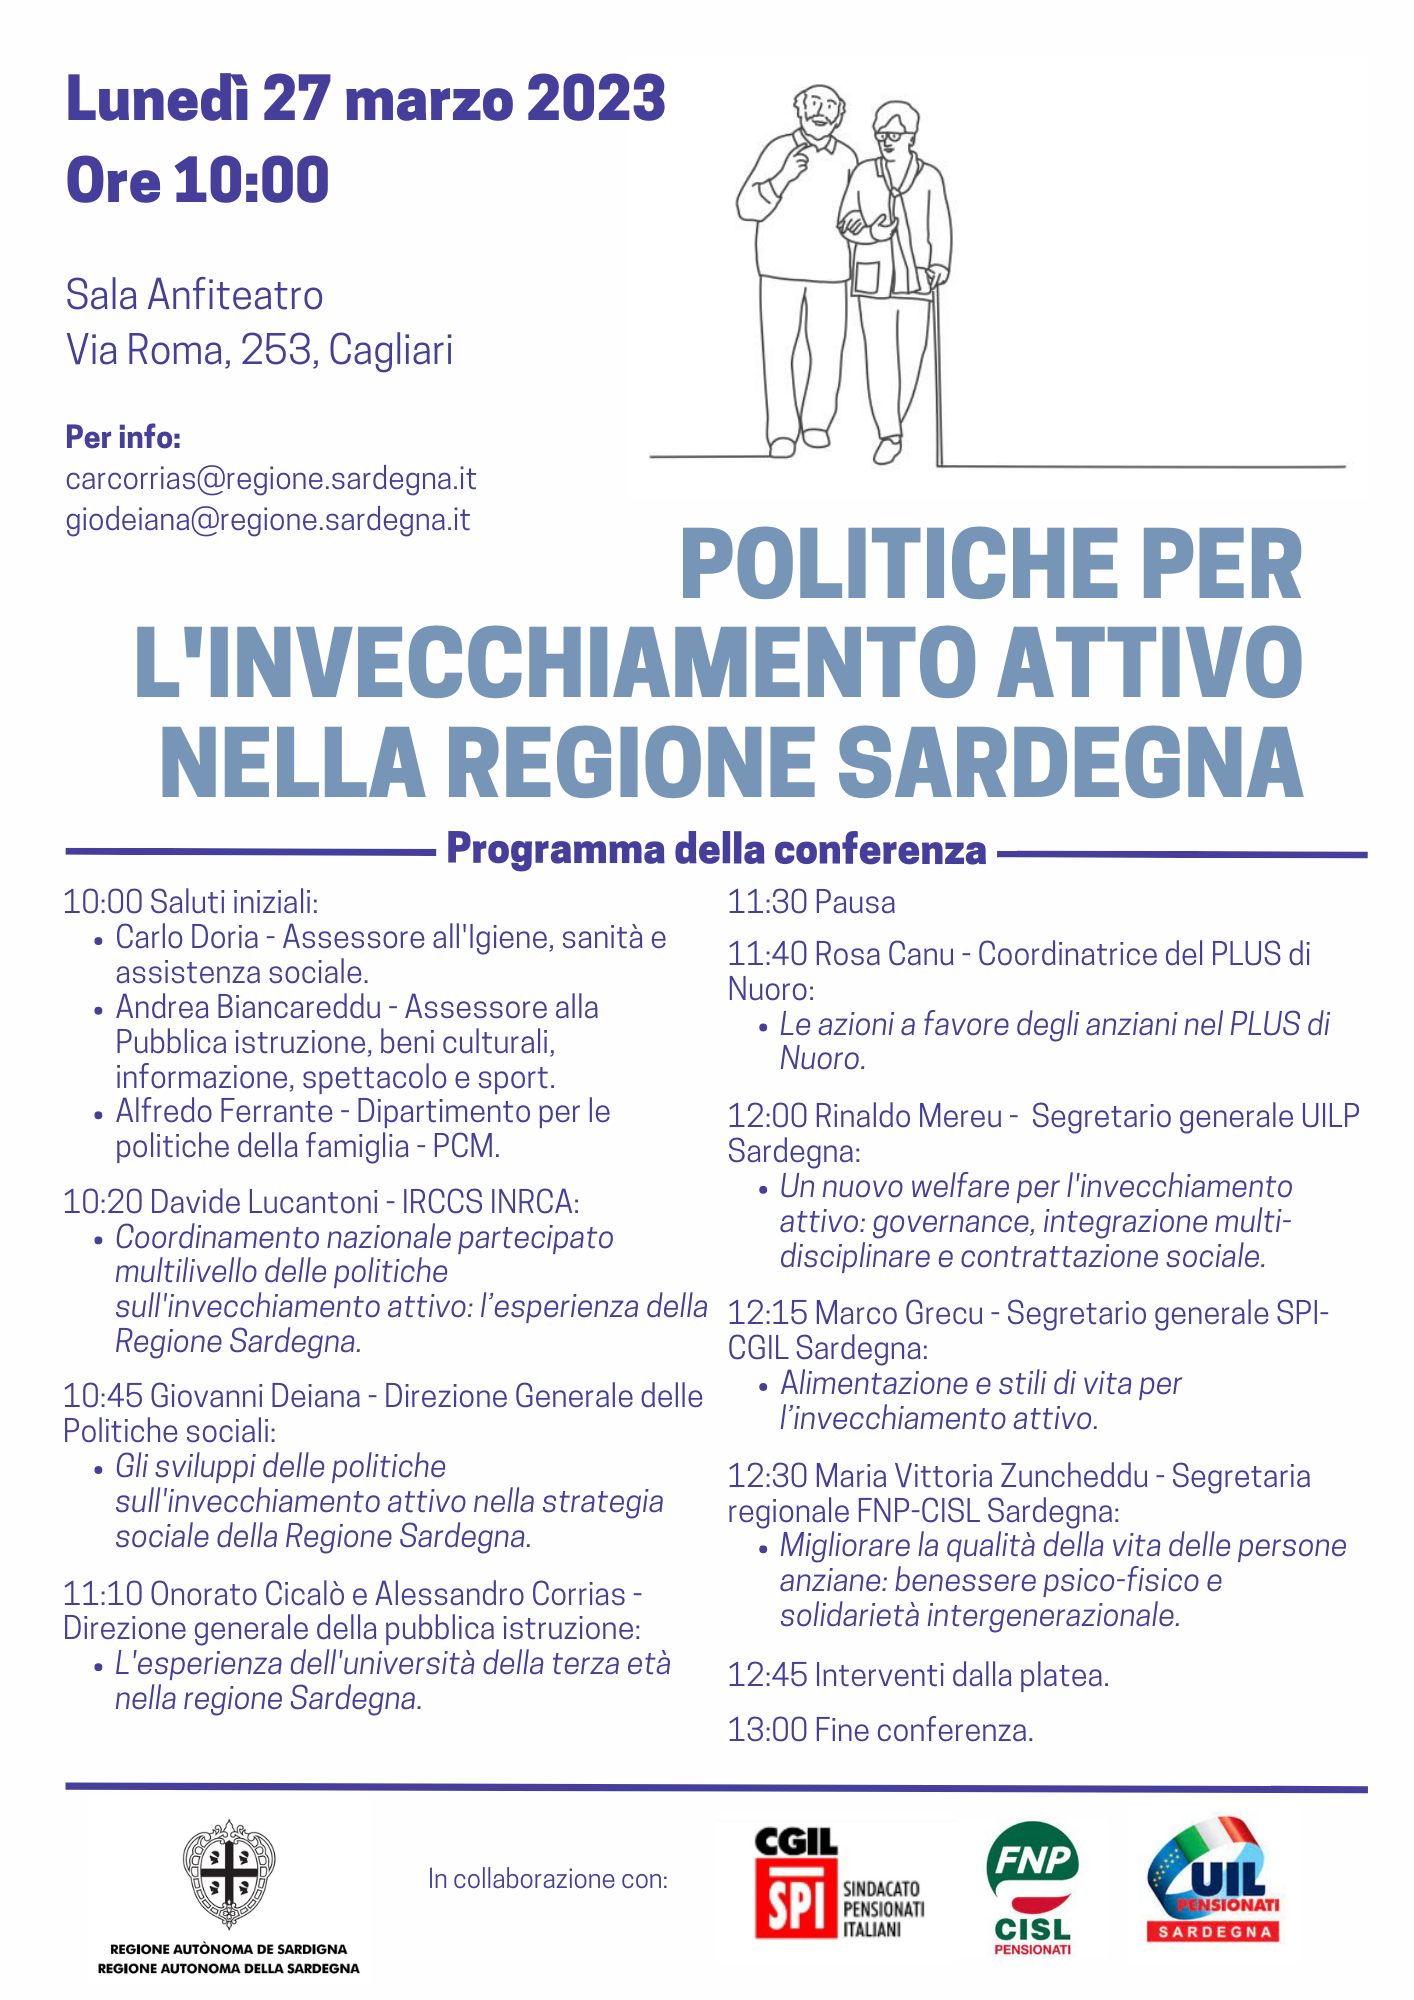 Politiche per l'invecchiamento attivo nella Regione Sardegna